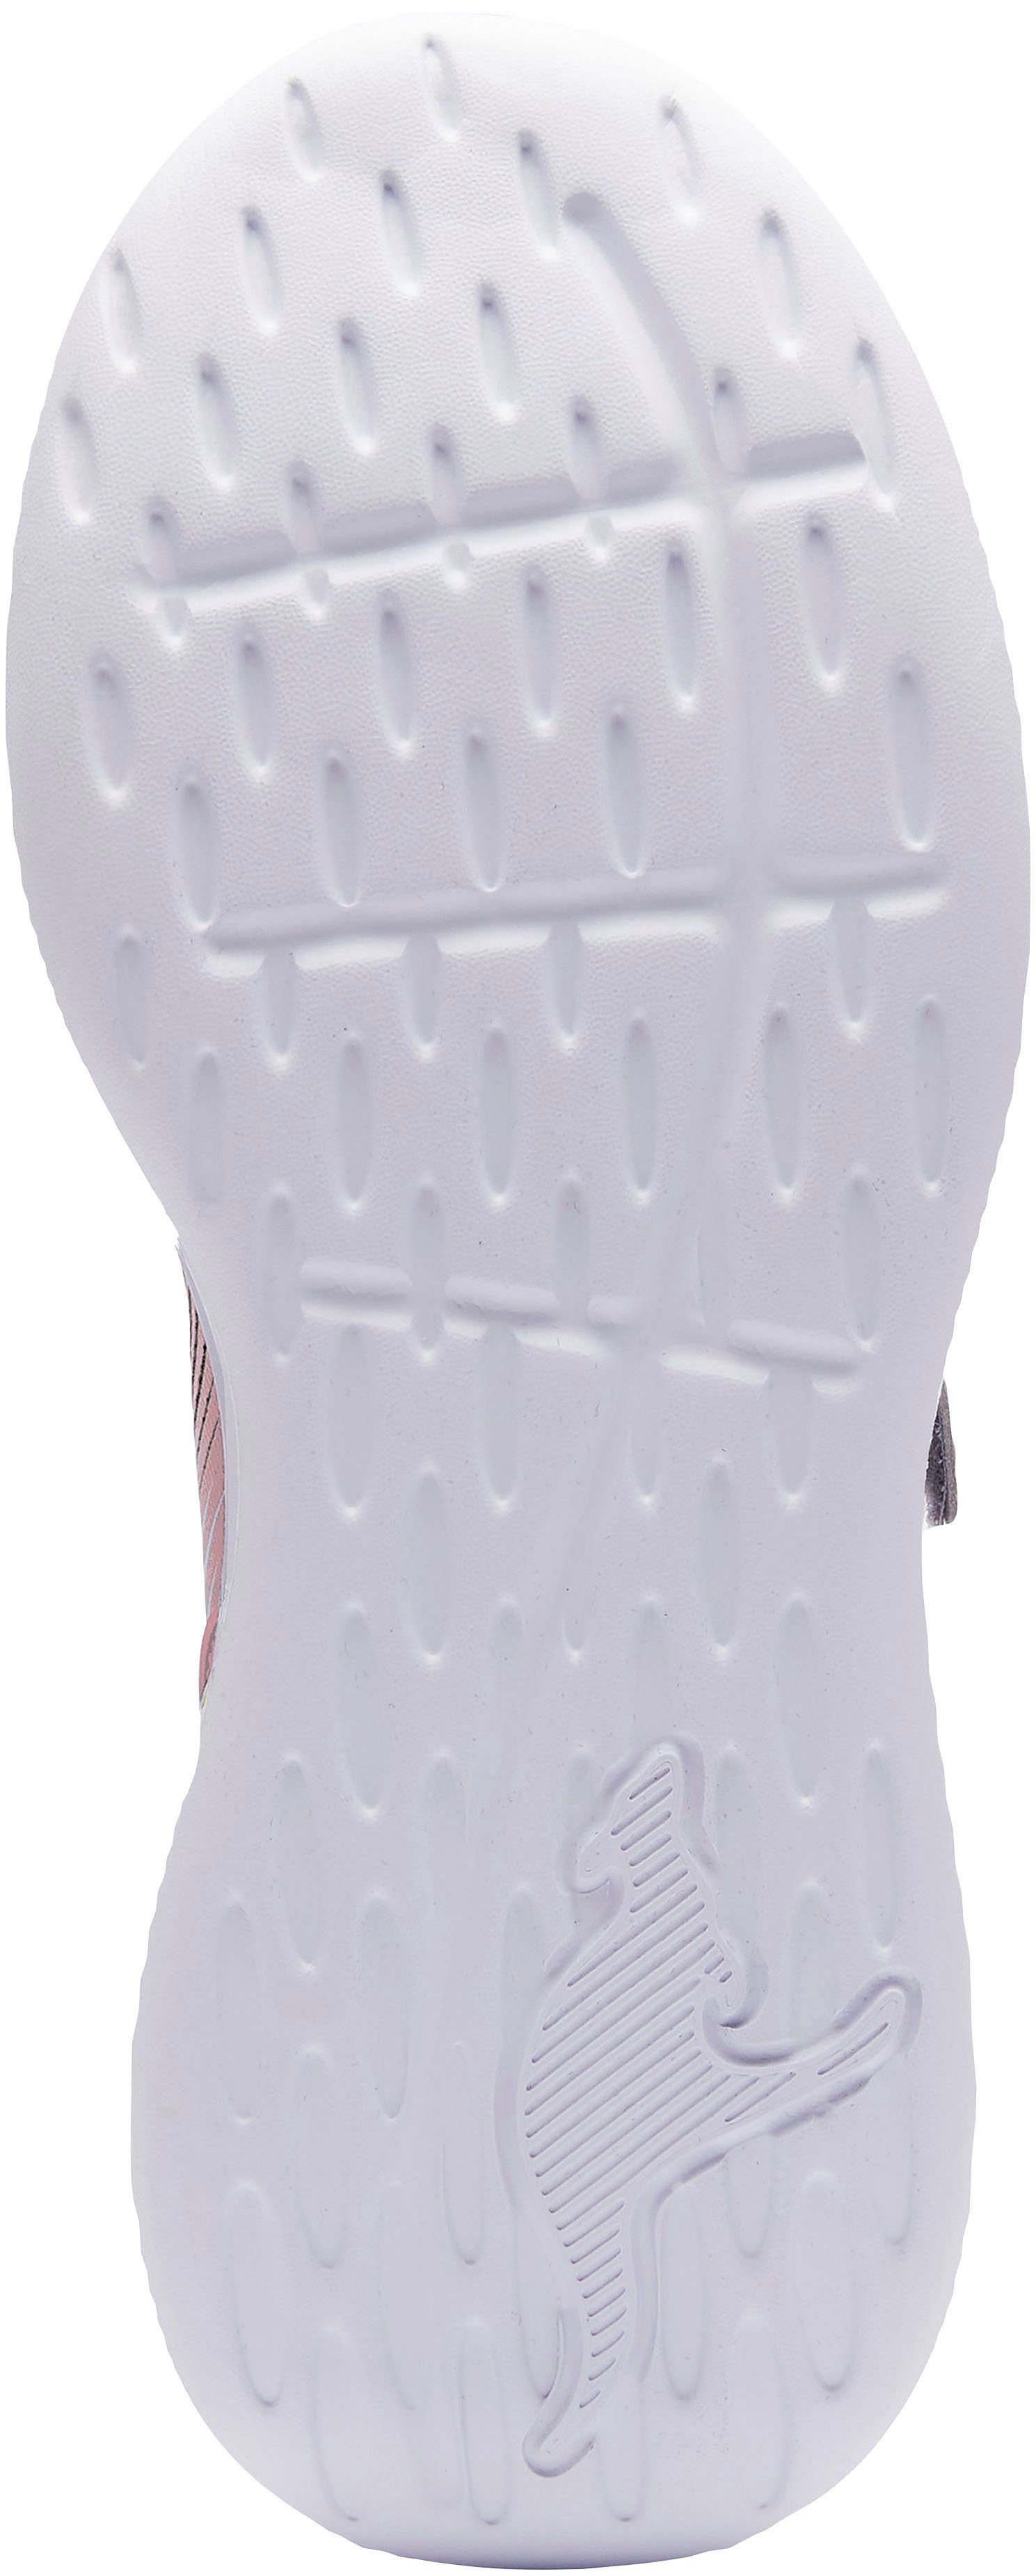 KQ-Unique mit EV Sneaker navy-rosa KangaROOS Klettverschluss